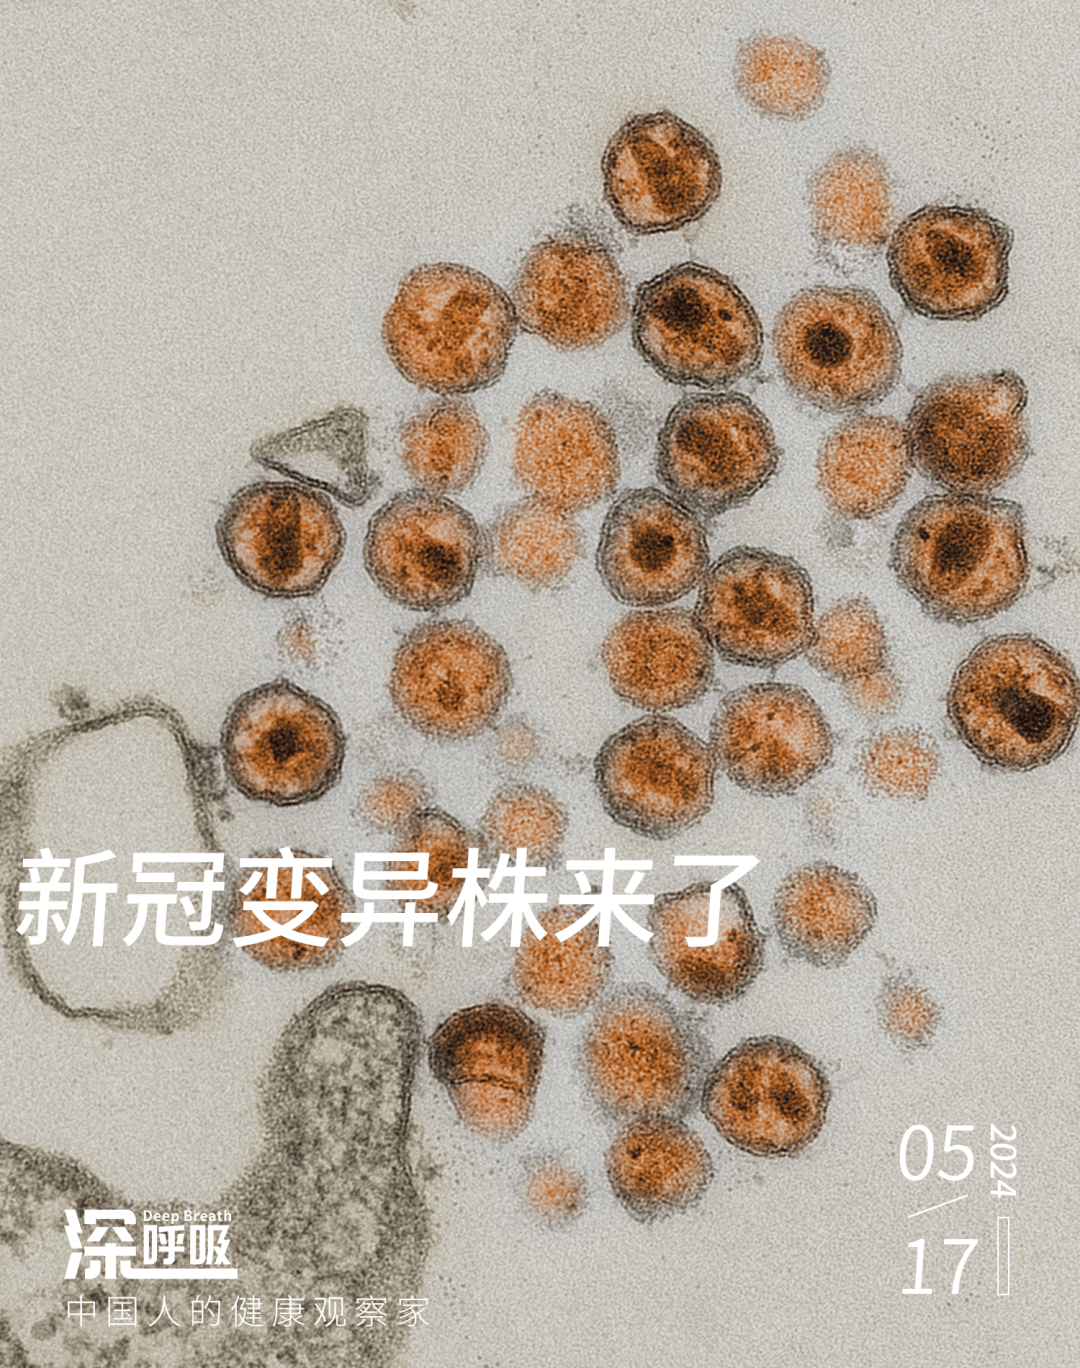 新冠病毒新变种KP.2首次在广东发现，将更具传染性